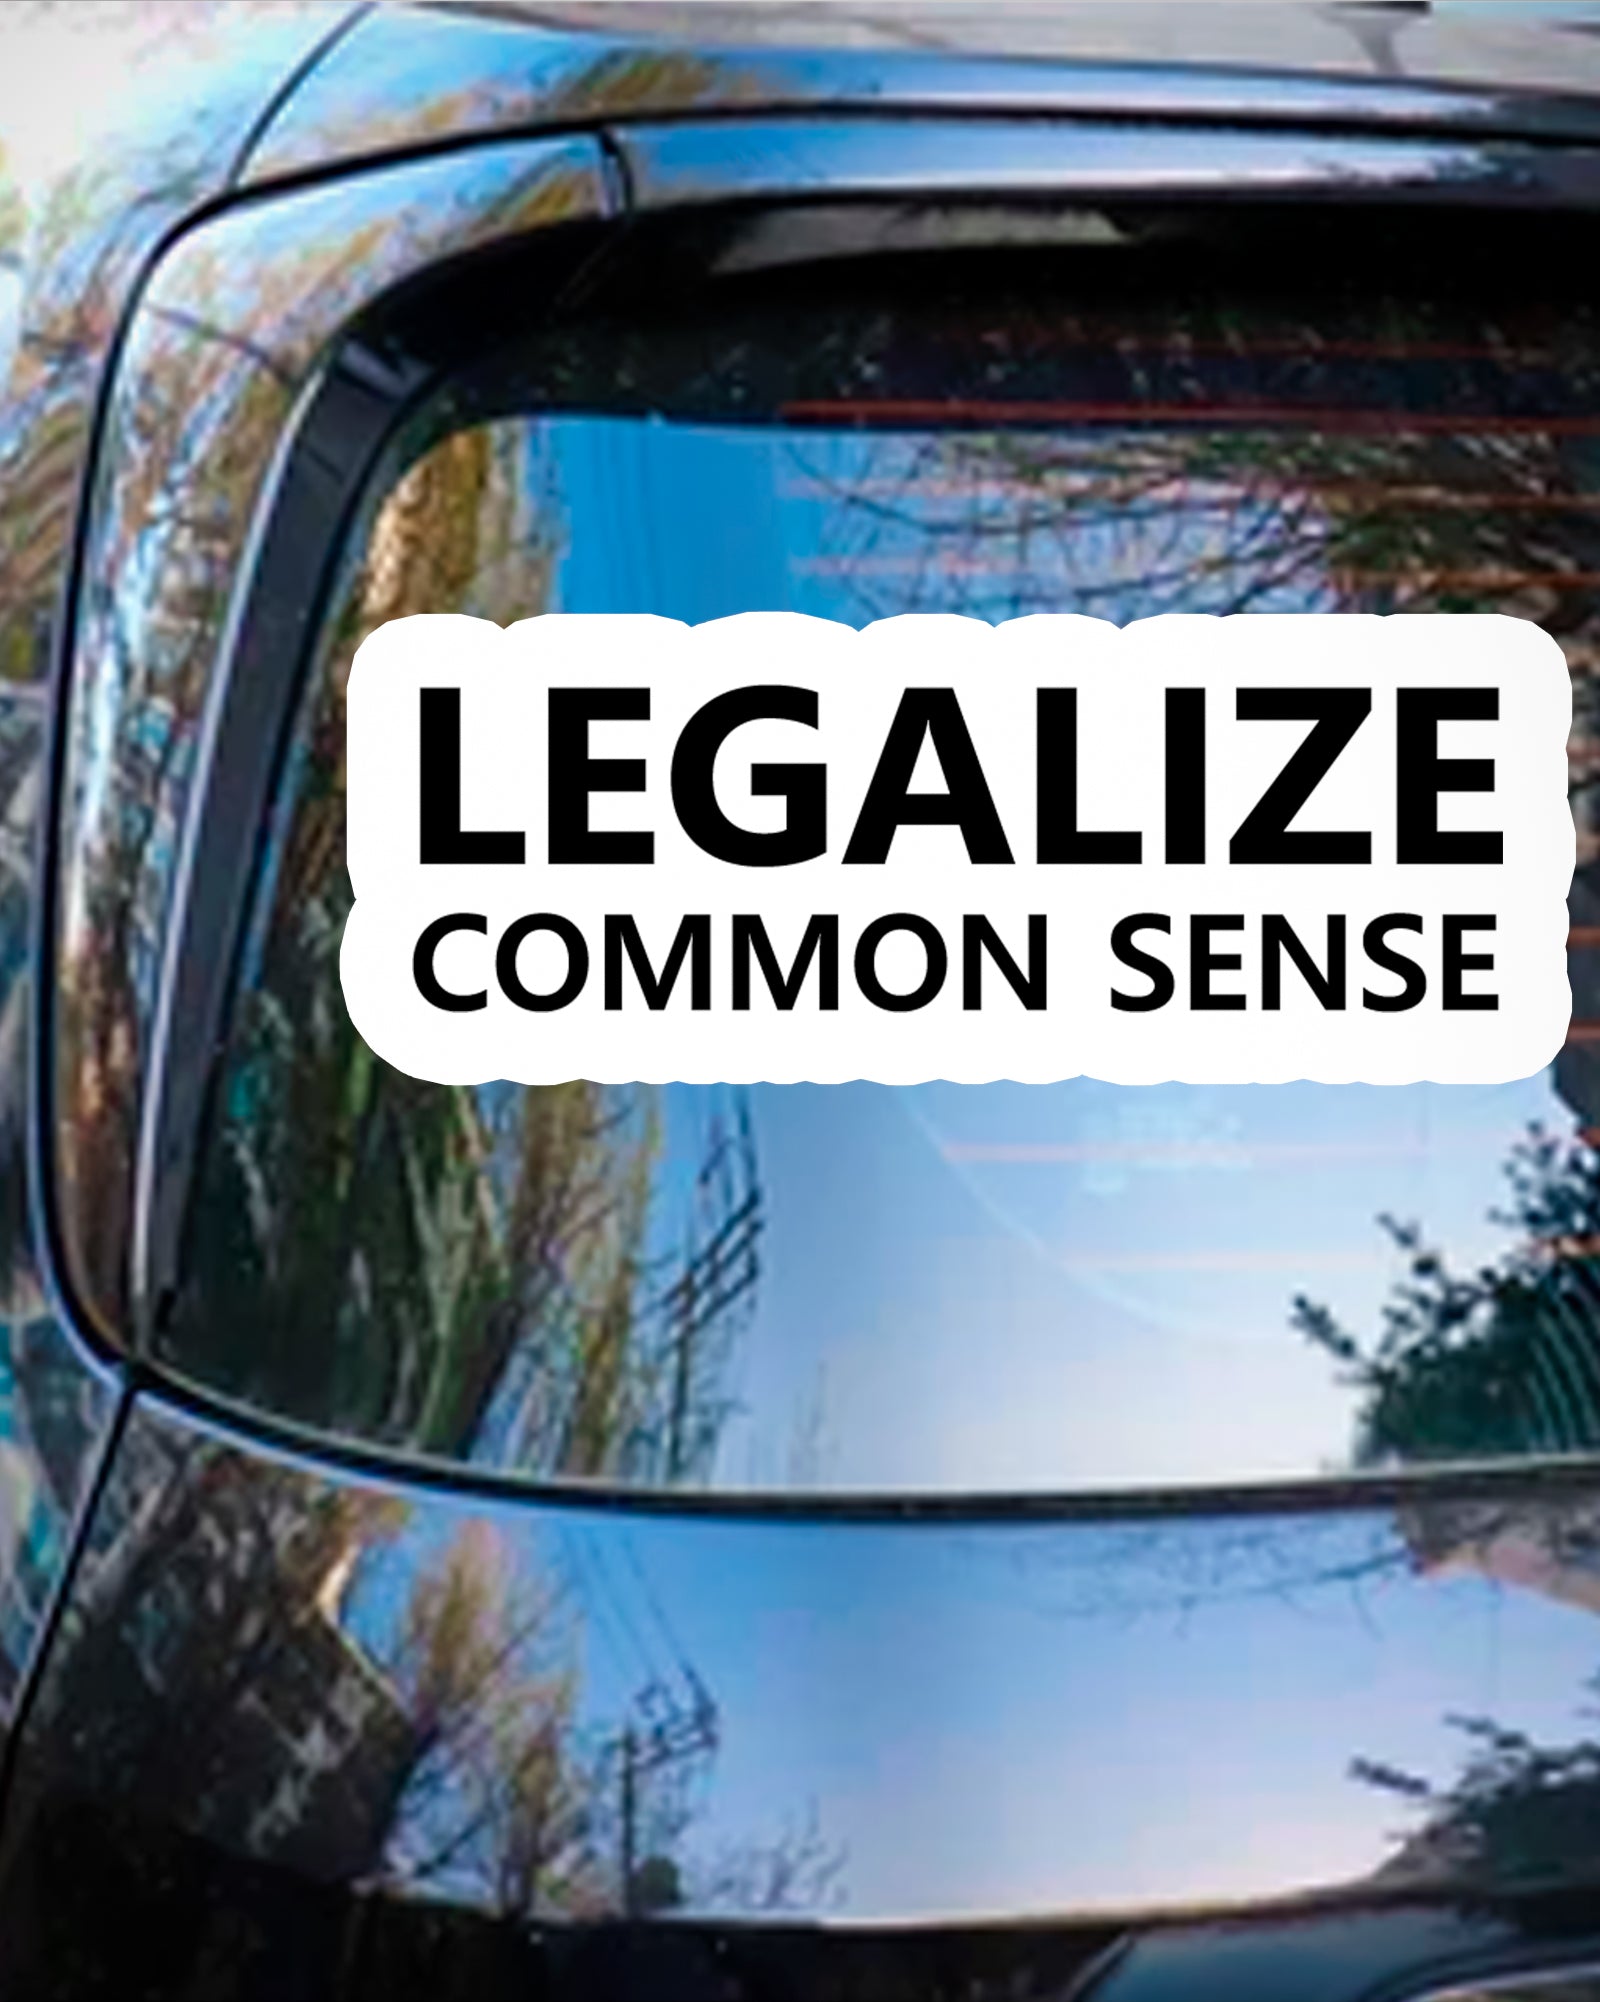 Legalize Common Sense Funny Sticker